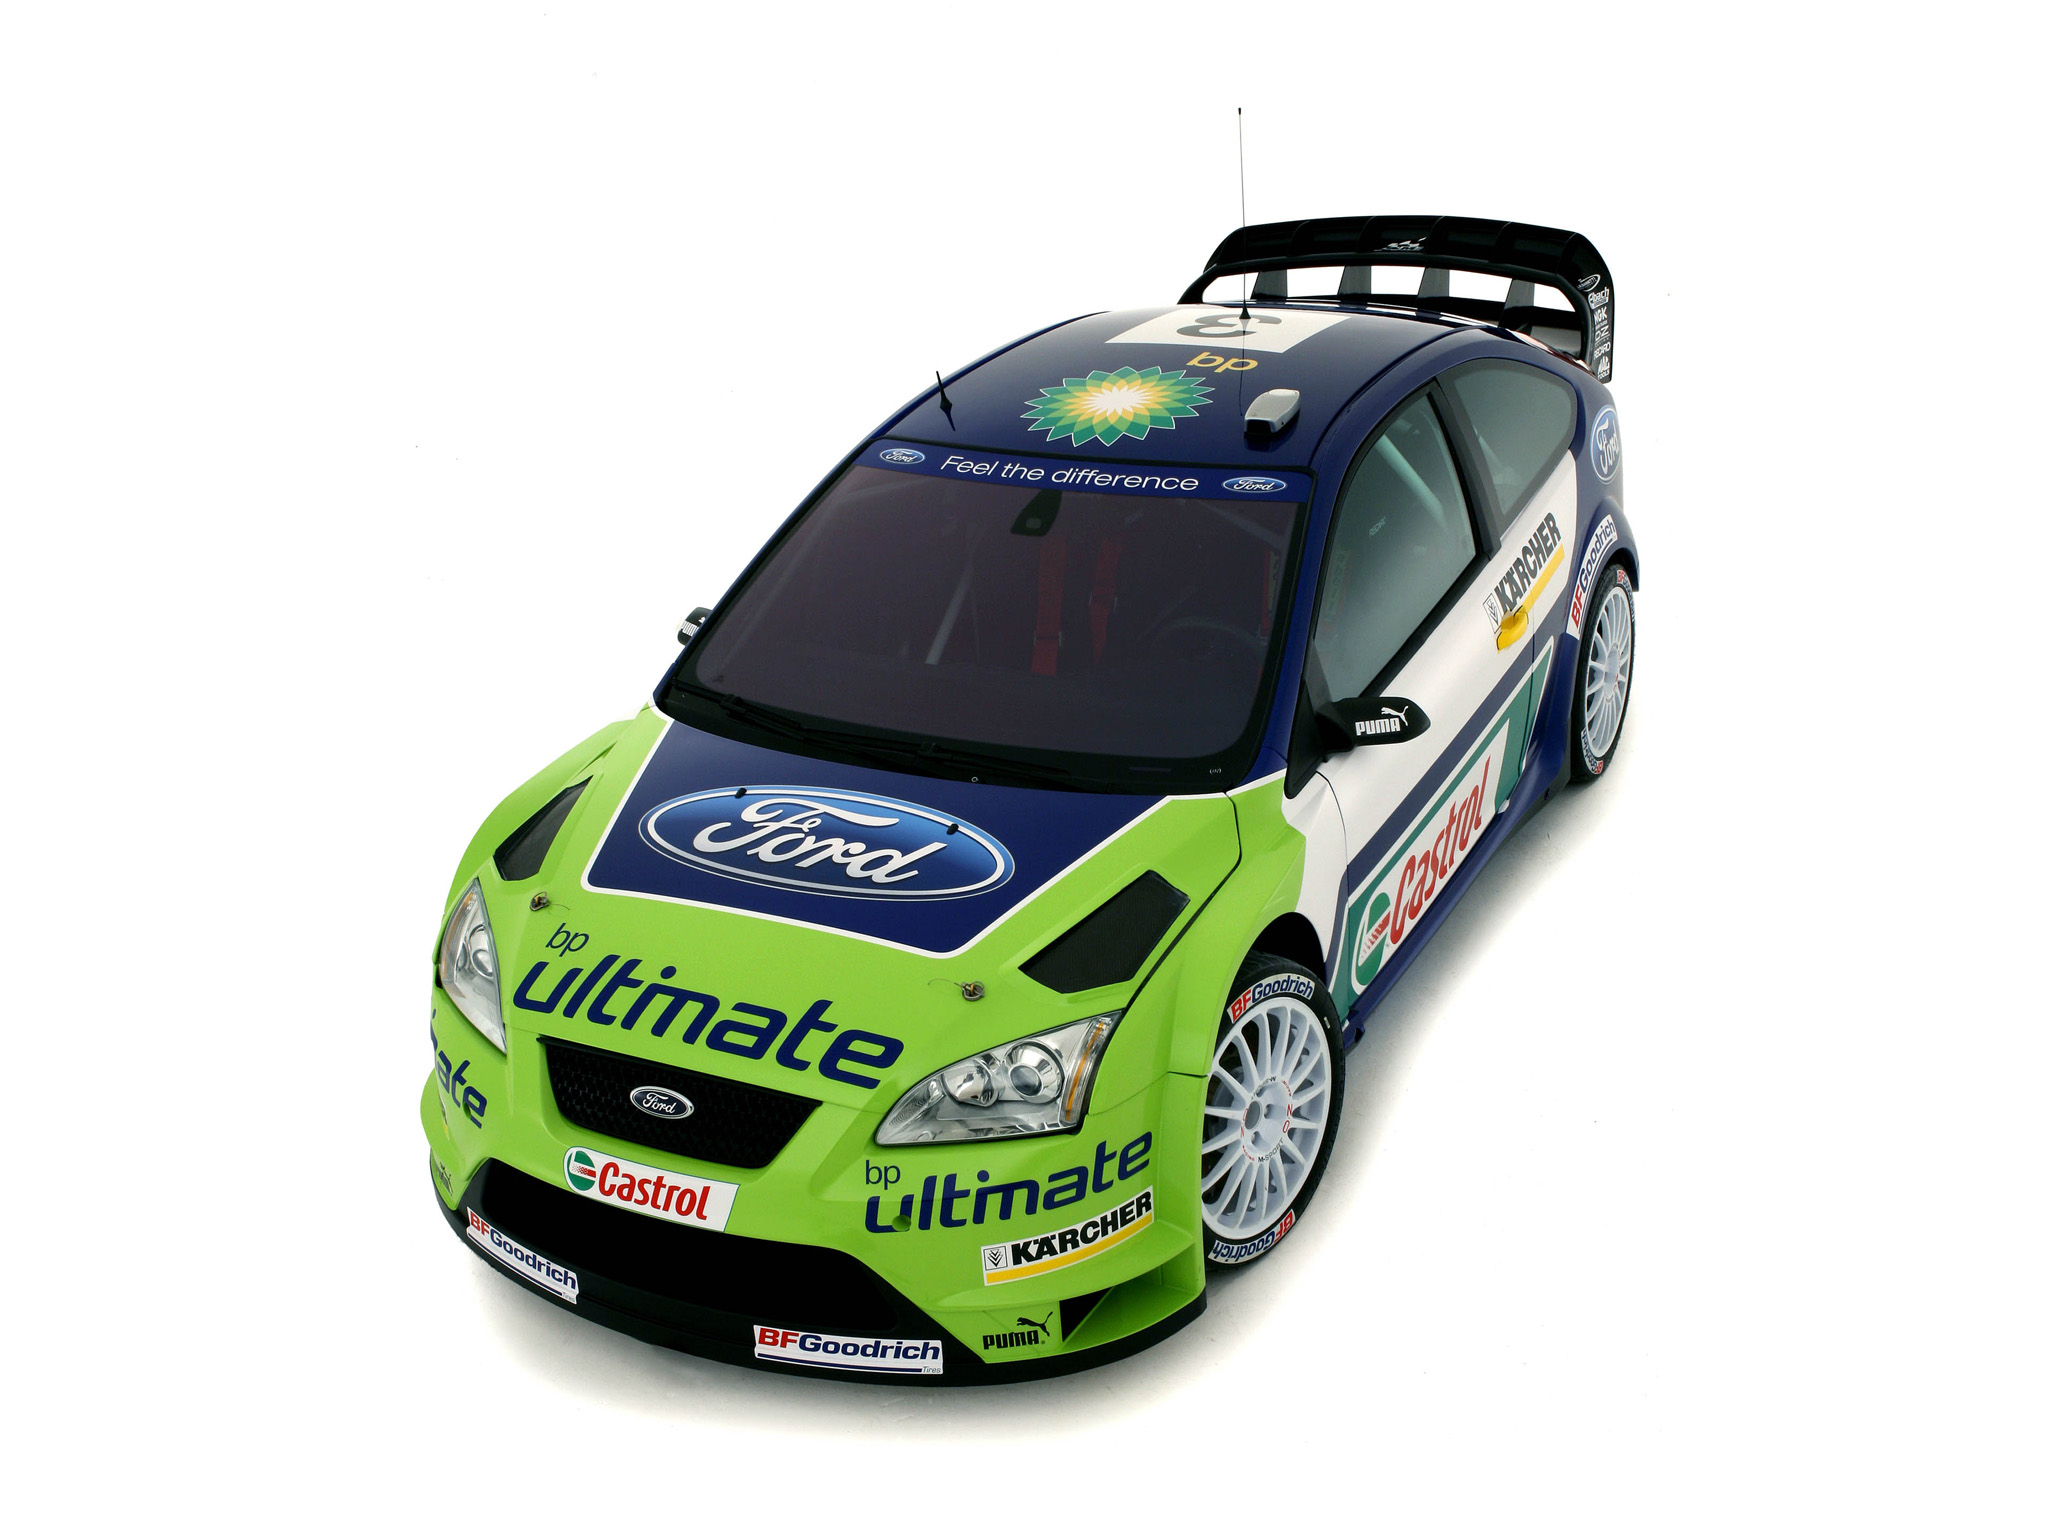 Free download wallpaper Racing, Vehicles, Wrc Racing on your PC desktop